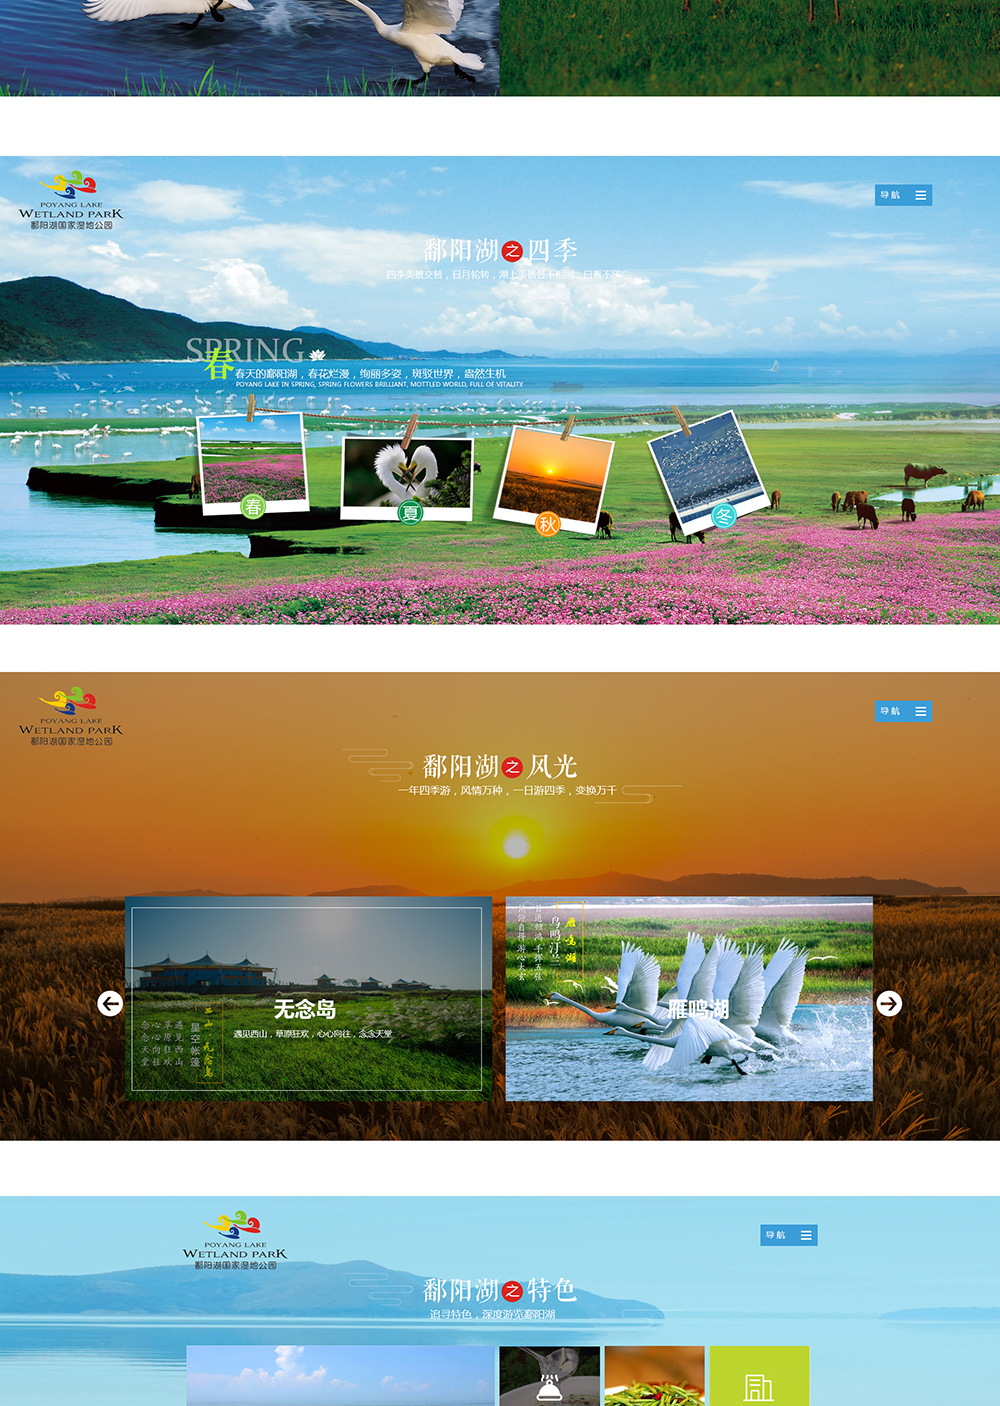 江西鄱阳湖湿地公园旅游开发有限公司_02.jpg